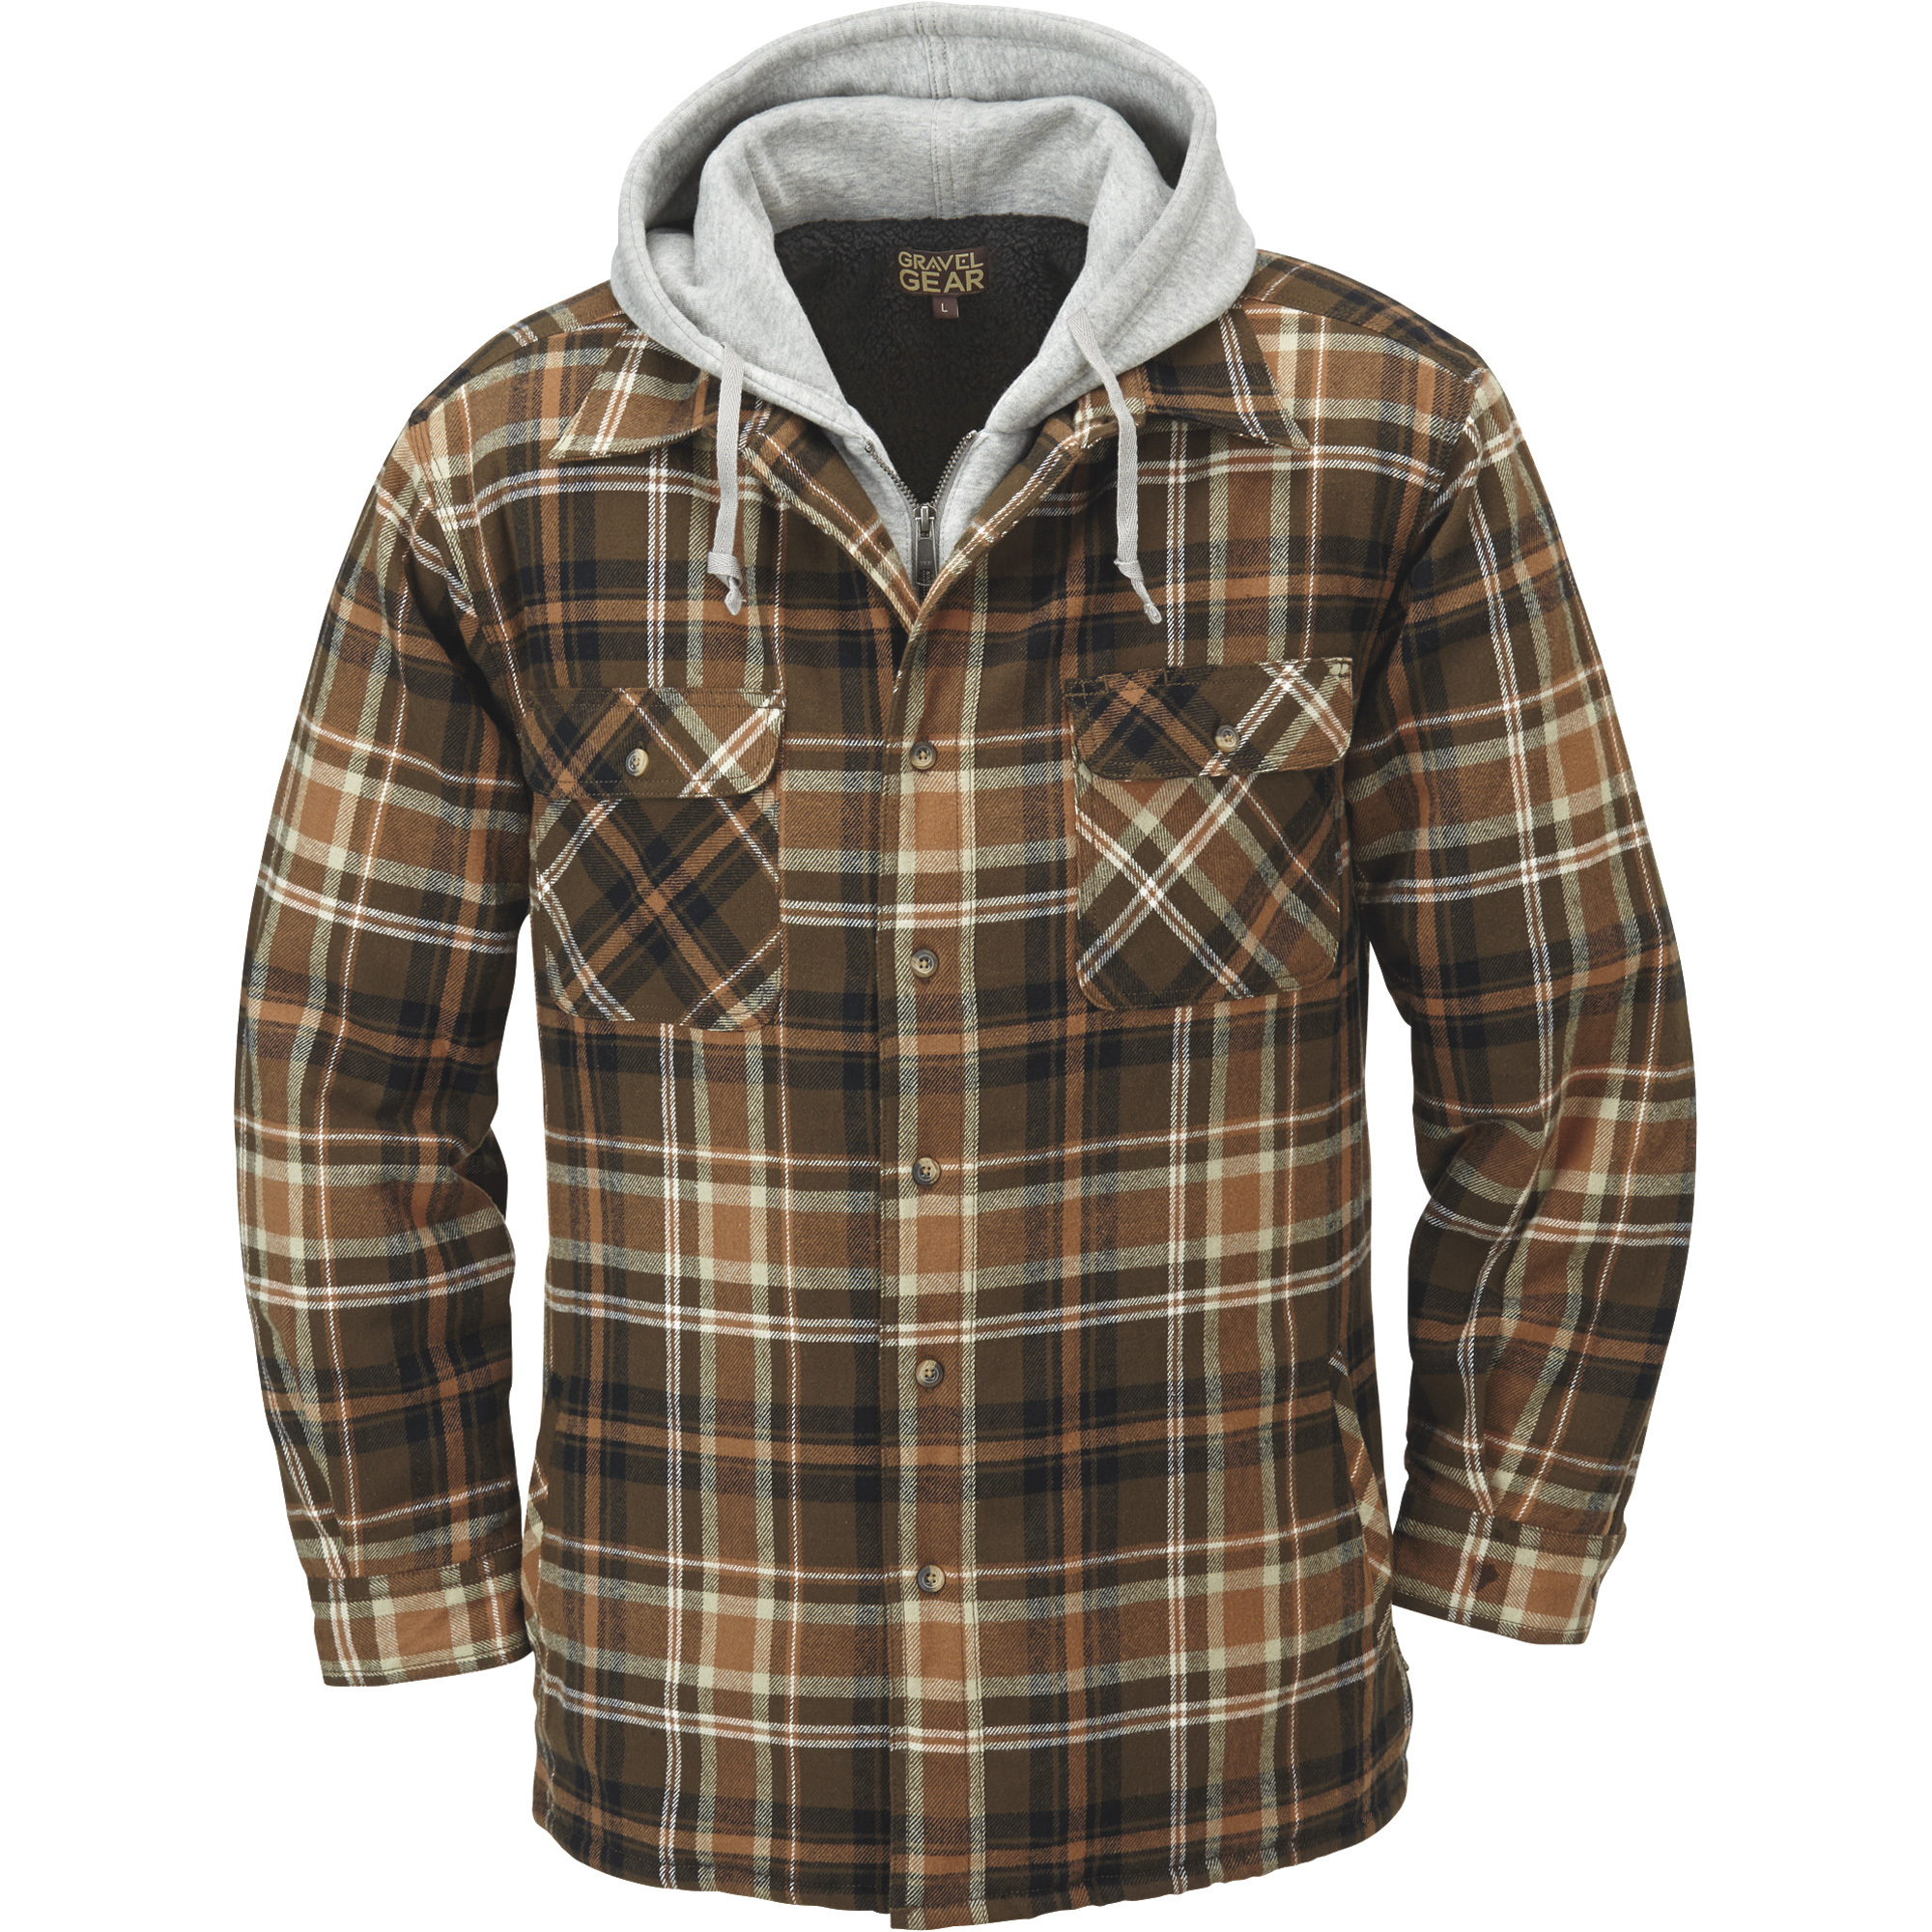 Gravel Gear Sherpa-Lined Hooded Flannel Shirt Jacket â 2XL, Tan